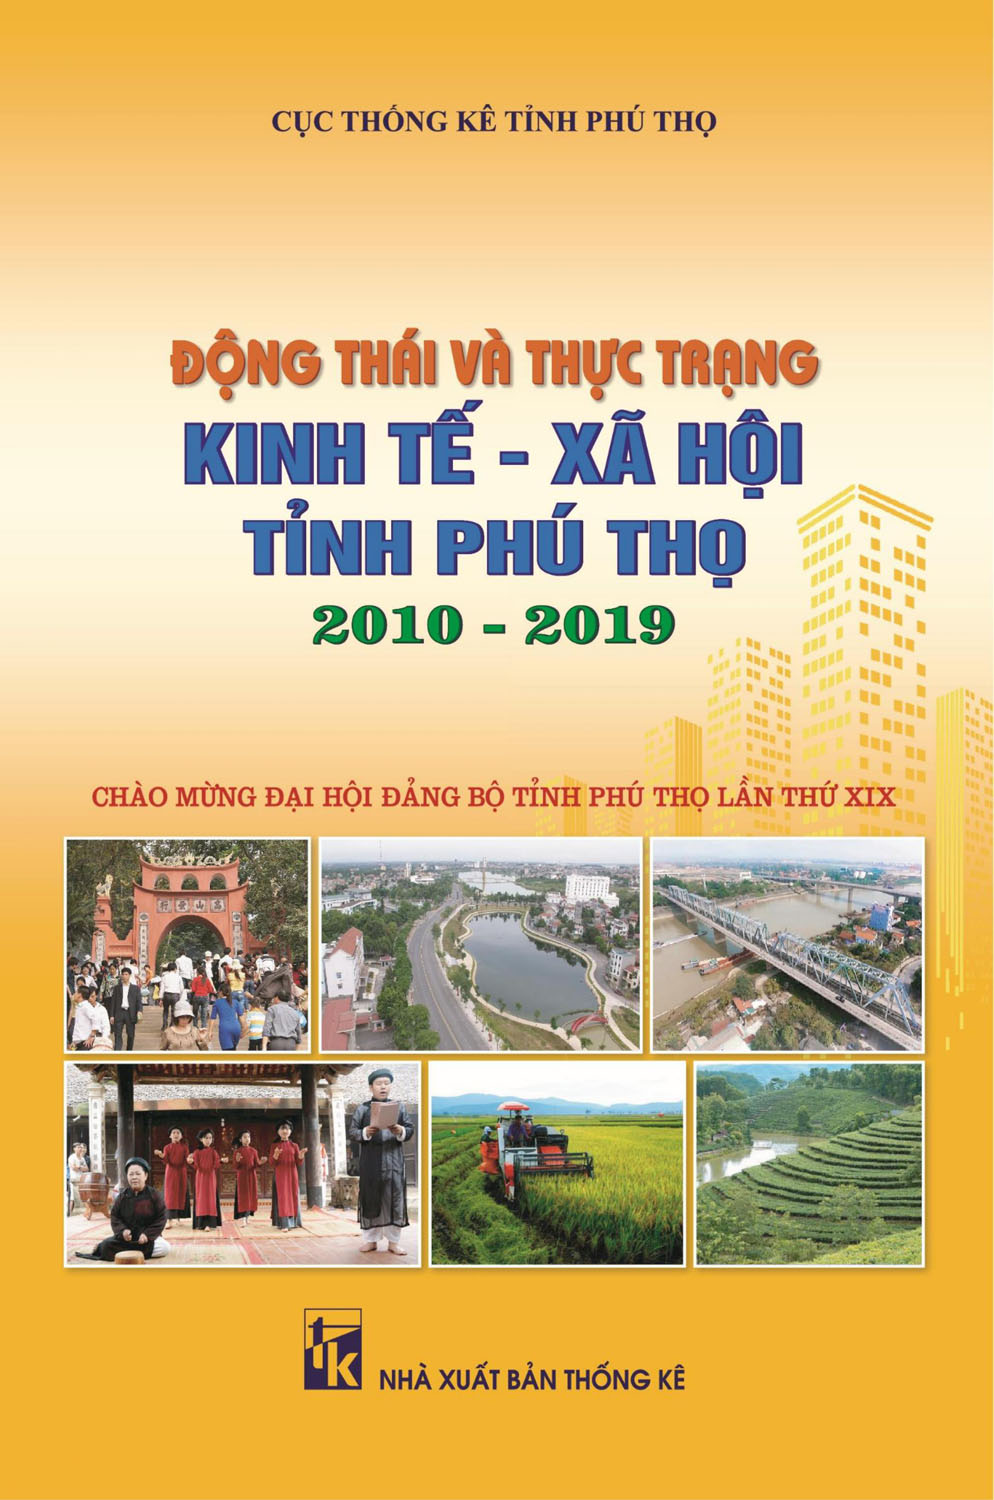 Ấn phẩm "Động thái và thực trạng kinh tế - xã hội tỉnh Phú Thọ 2010 - 2019"